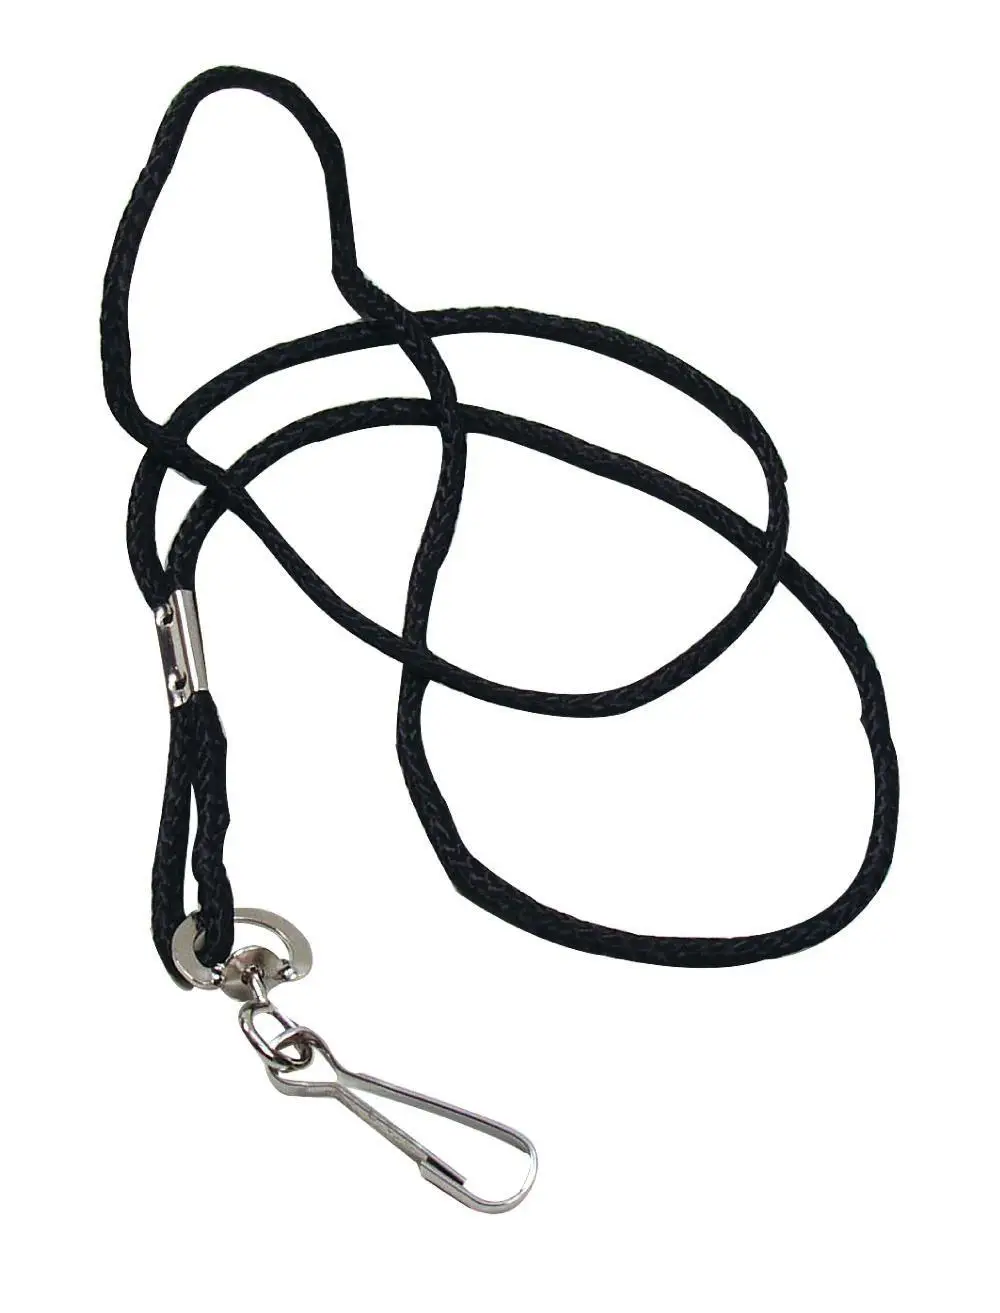 Шнурок для свистка Select Lanyard  чорний, 48 см фото товару